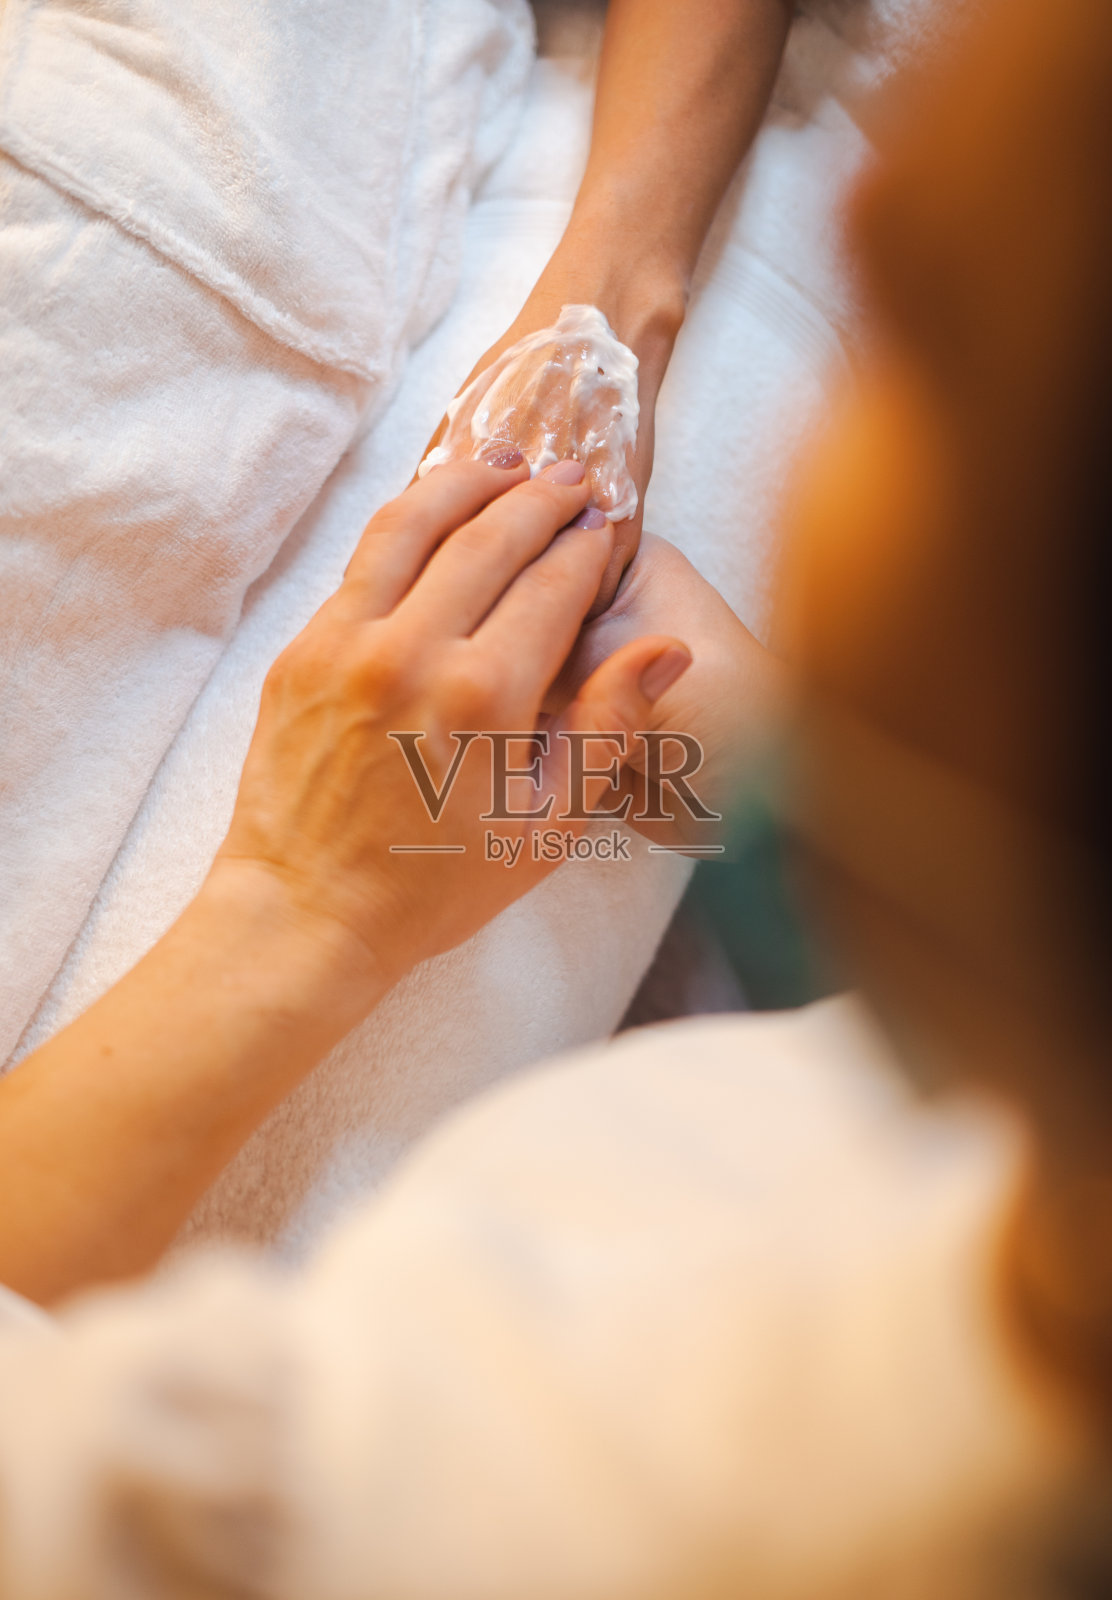 美容师在病人手上涂治疗霜。在美容水疗沙龙做手部护理。健康的生活方式。卫生保健。照片摄影图片